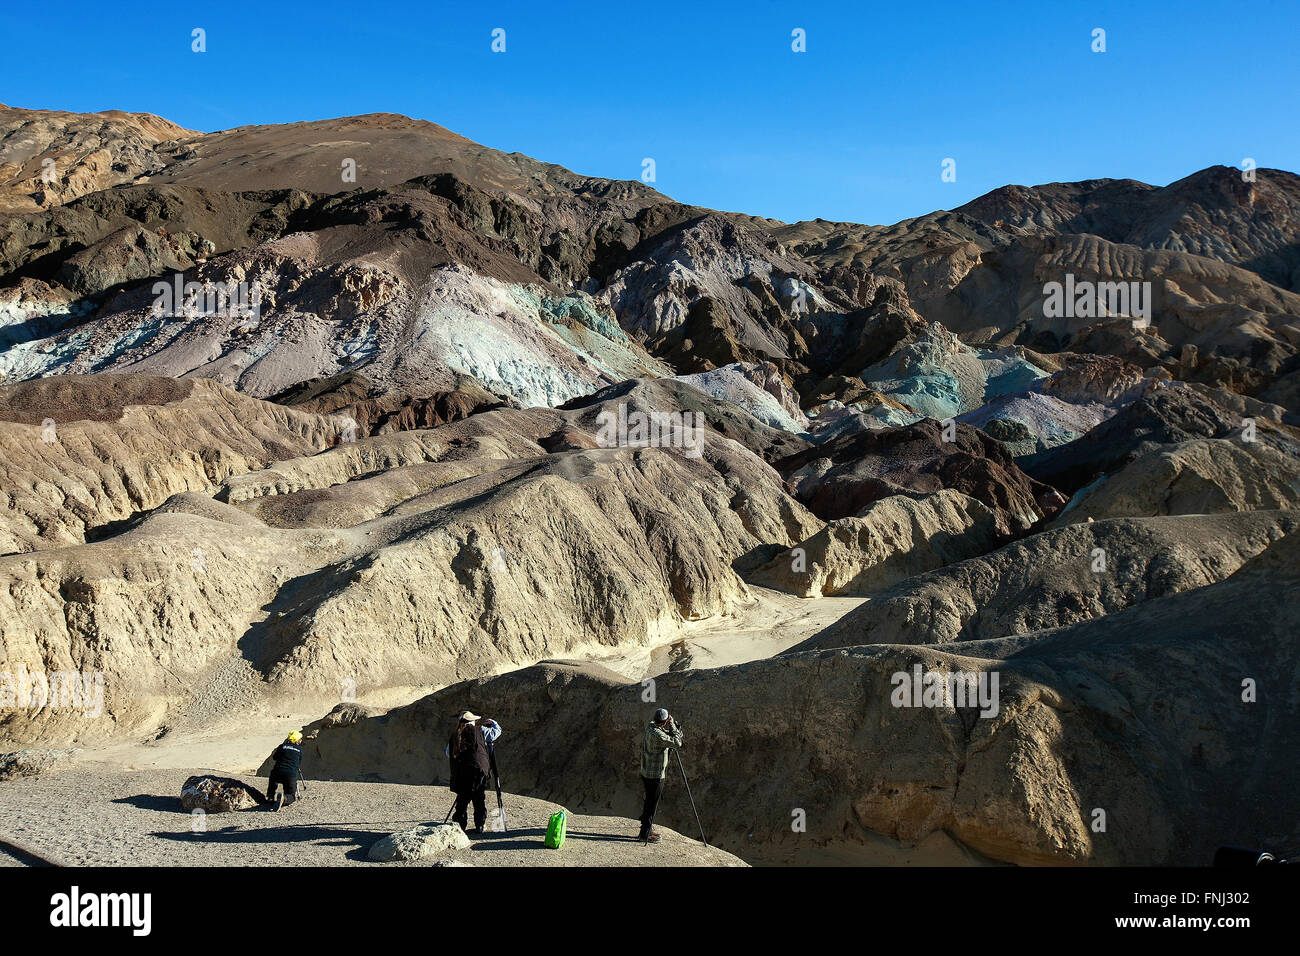 Photographes de la palette d'artiste, Death Valley National Park, California, United States of America Banque D'Images